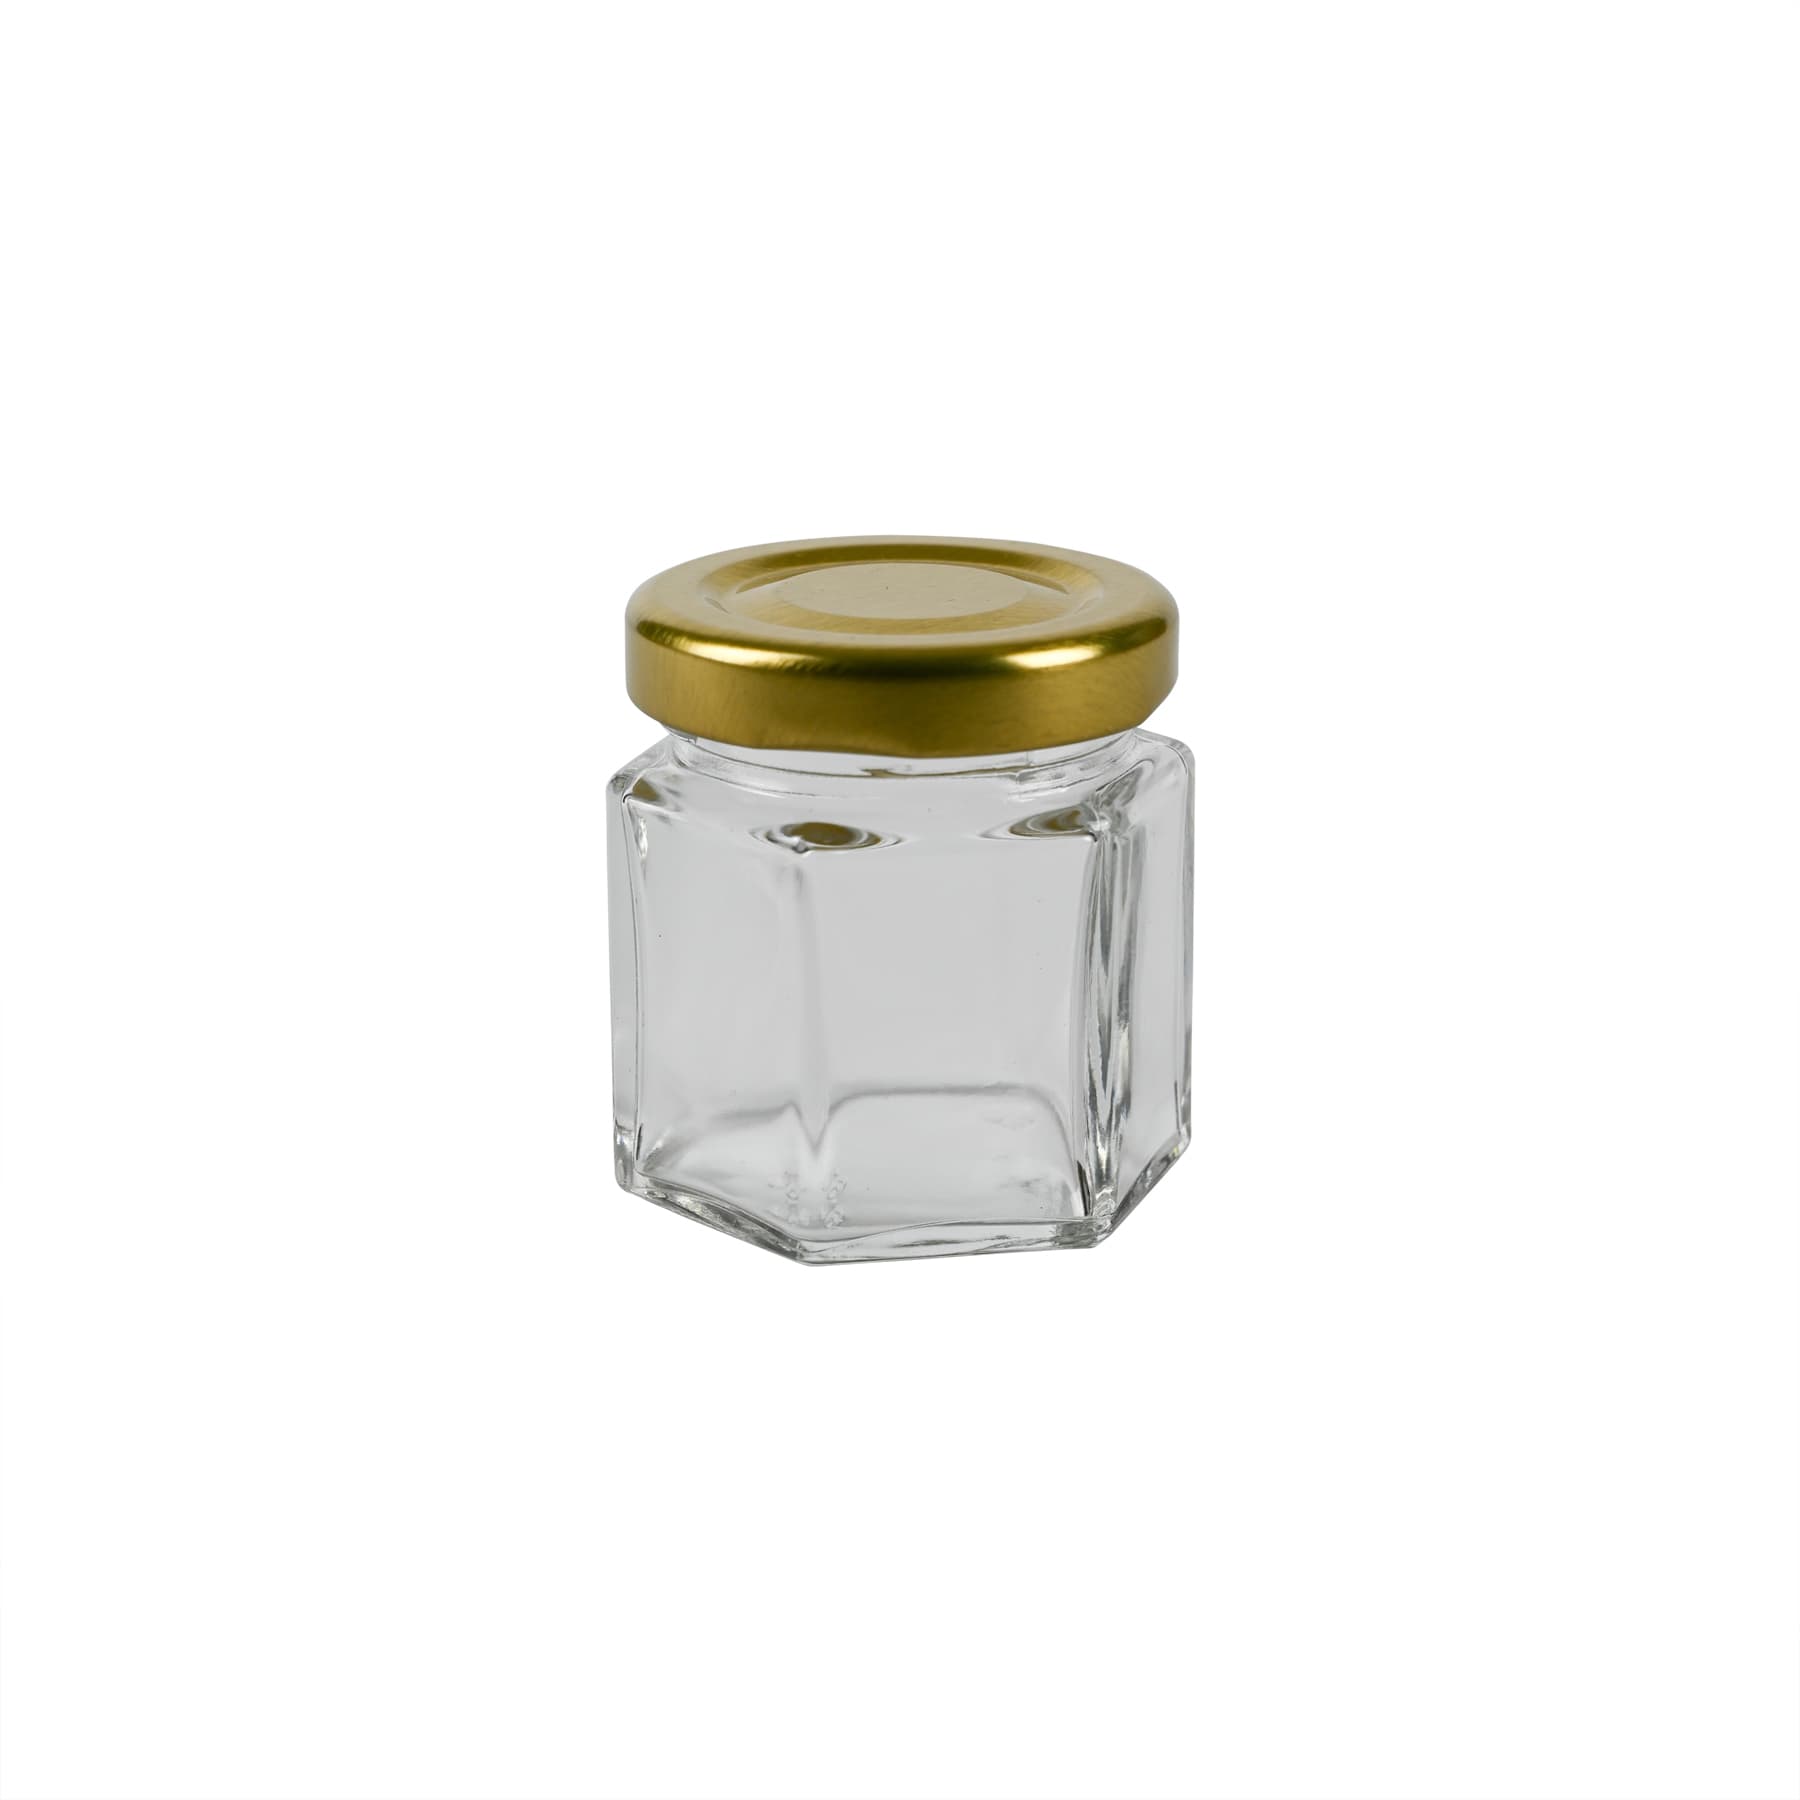 Sechseckglas 45 ml mit TO Metalldeckel gold 43 mm für ca. 50 g Honig